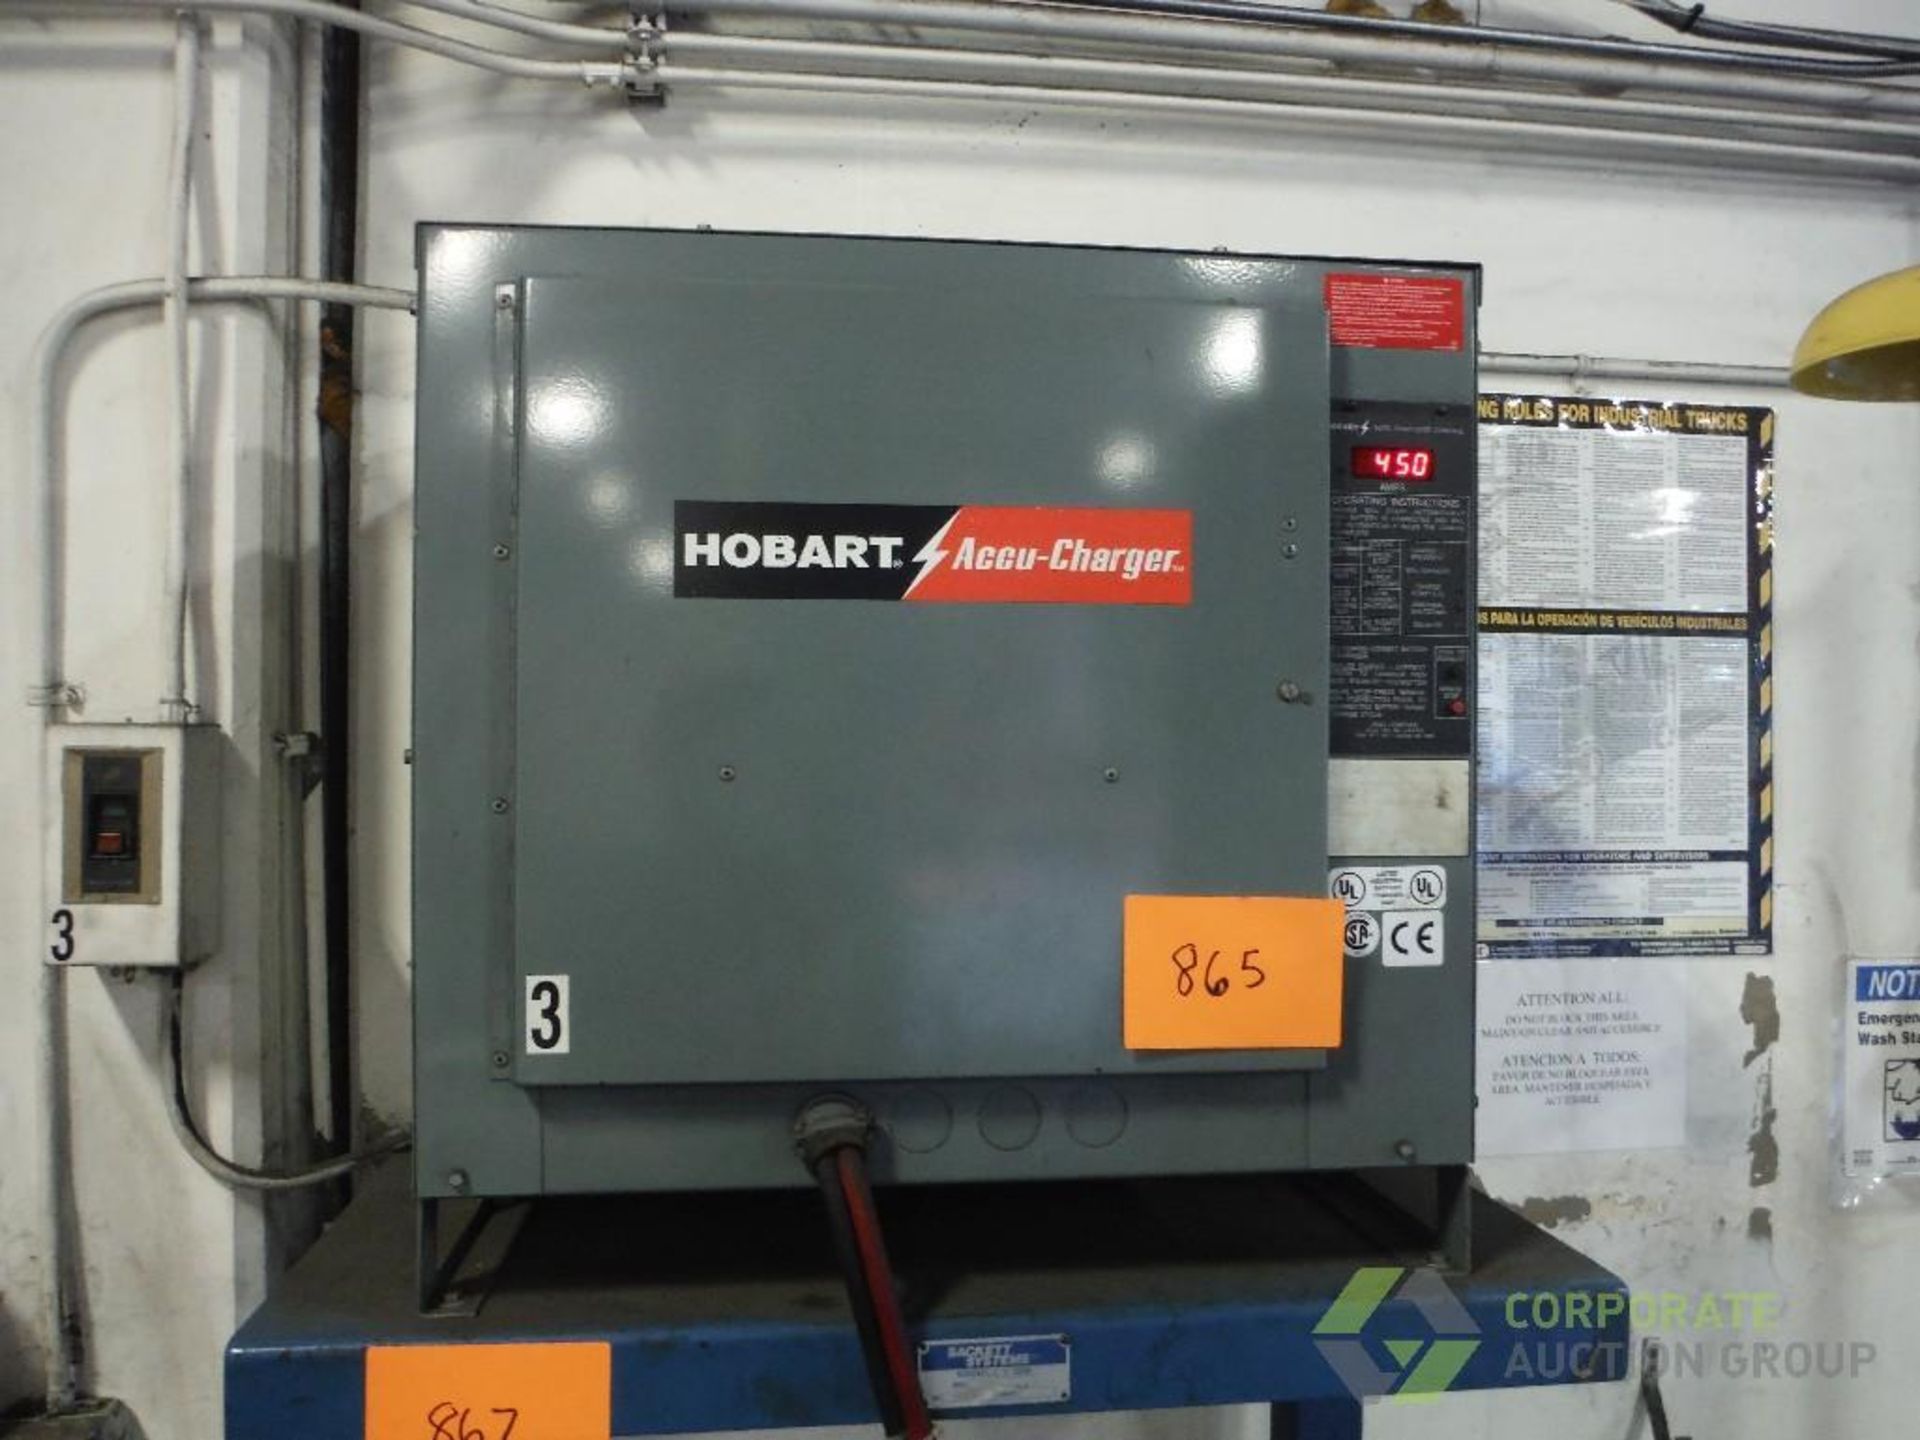 Hobart 24 volt battery charger, Model 880C3-12, SN 299BS51992